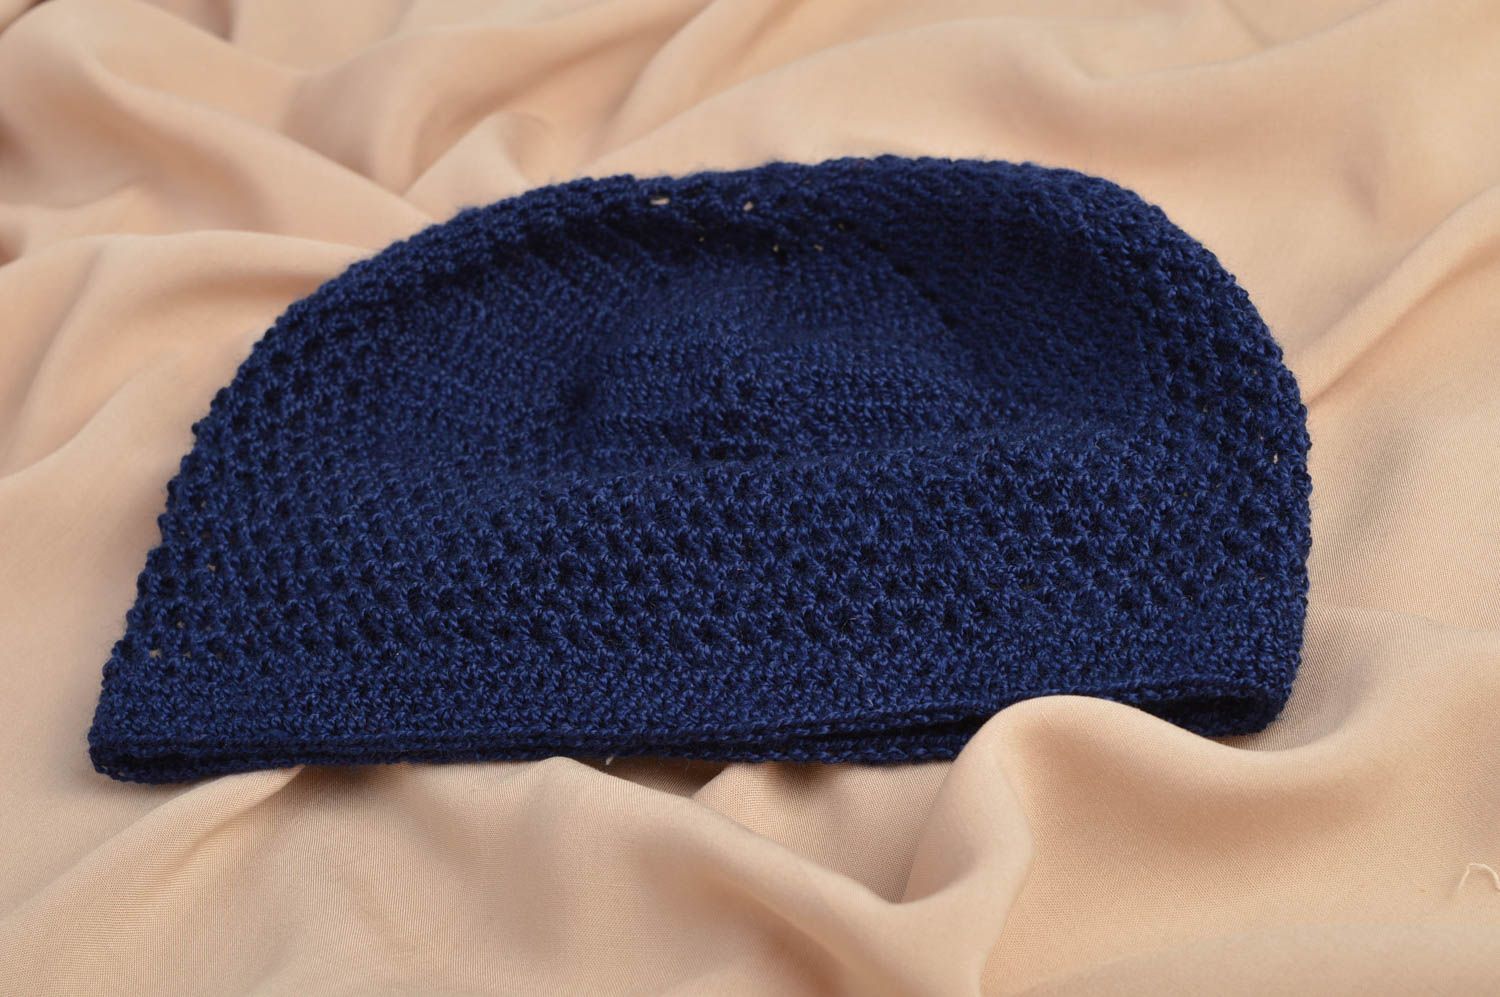 Вязаная шапка крючком ажурная синяя красивая для девочек ручной работы фото 1